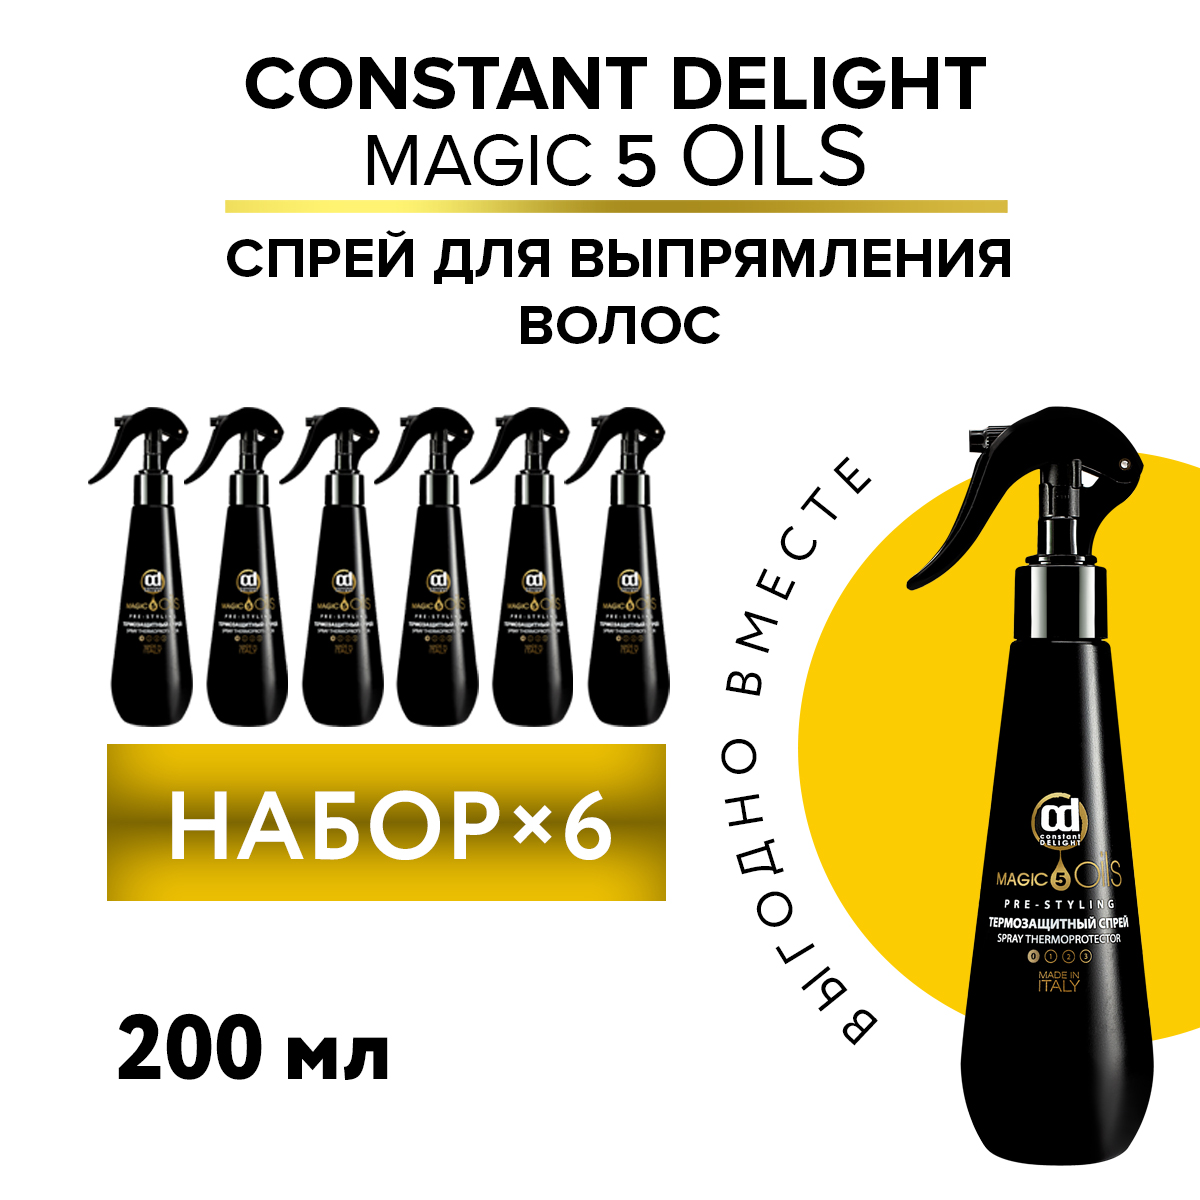 Спрей термозащитный Constant Delight Magic 5 Oils без фиксации 200 мл 6 шт constant delight 5 magic oils спрей термозащитный 5 масел 200 мл